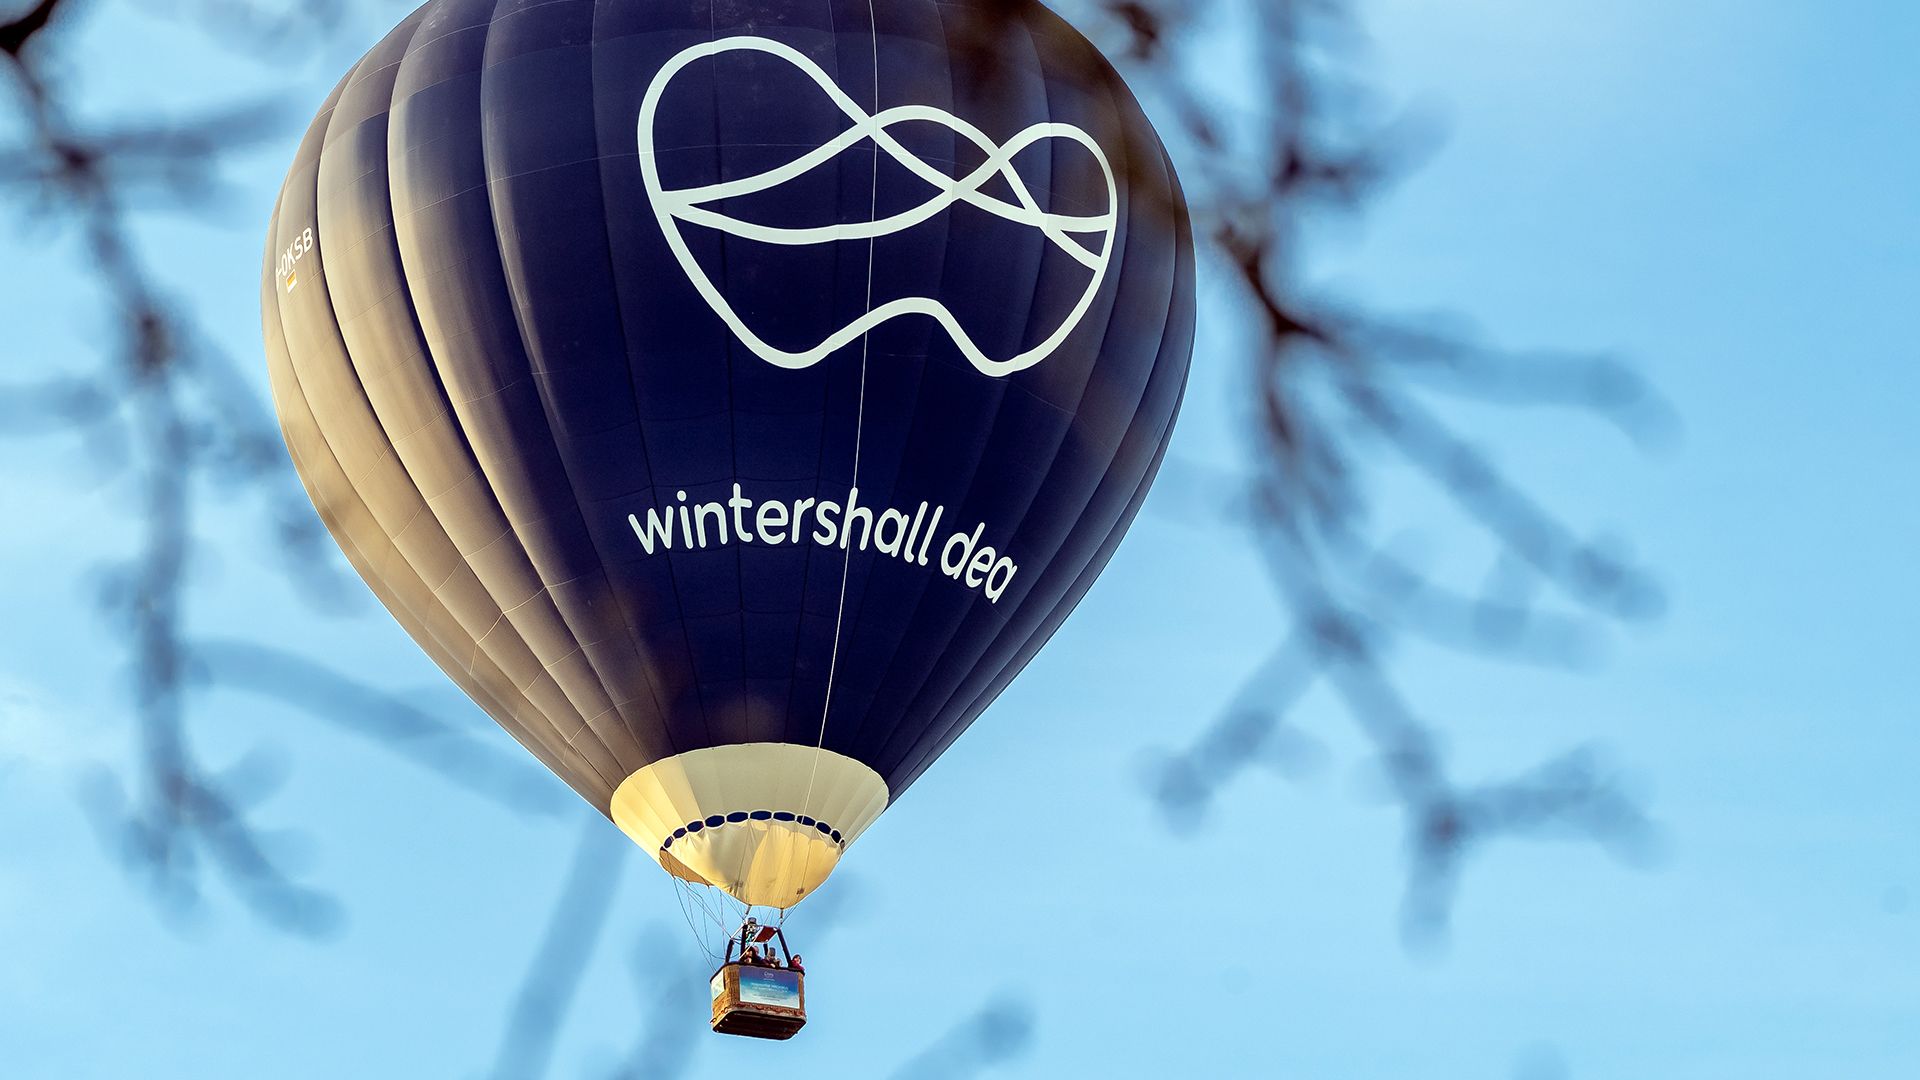 Wintershall Dea hot air balloon